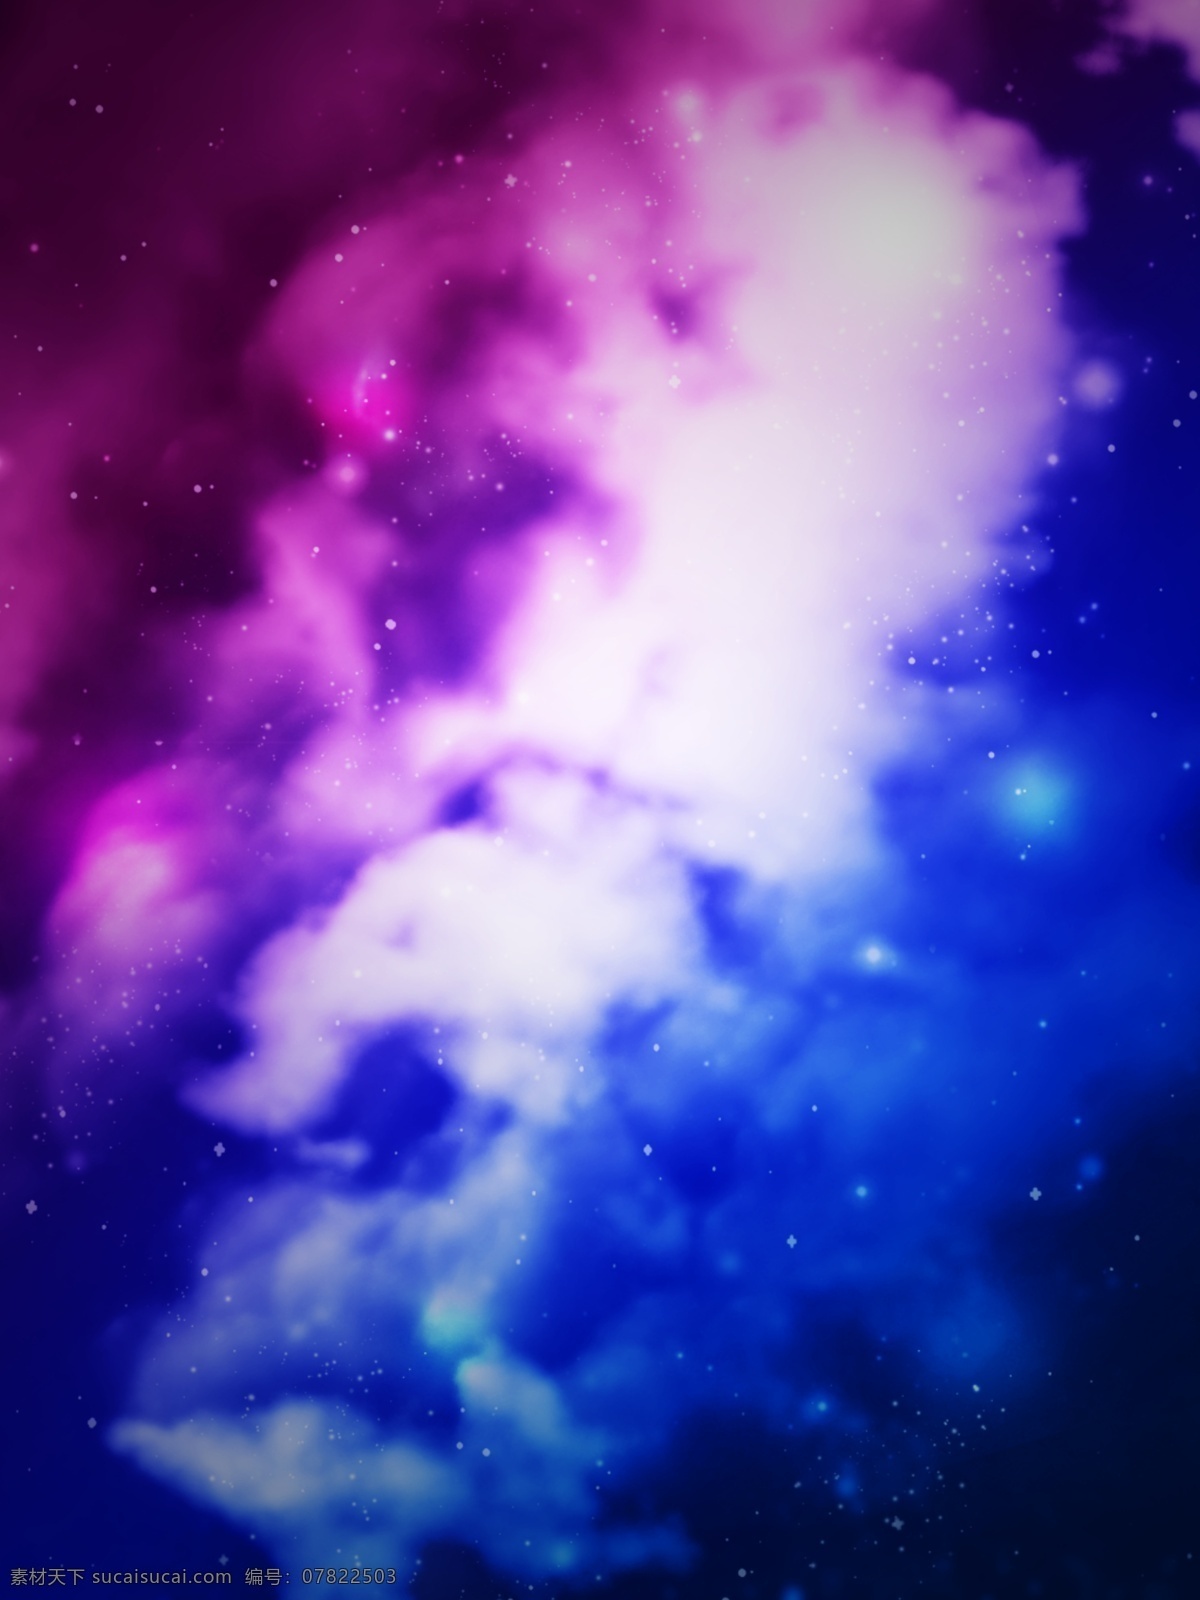 纯 原创 梦幻 宇宙 星空 背景 蓝色 紫色背景 梦幻背景 宇宙背景 星辰背景